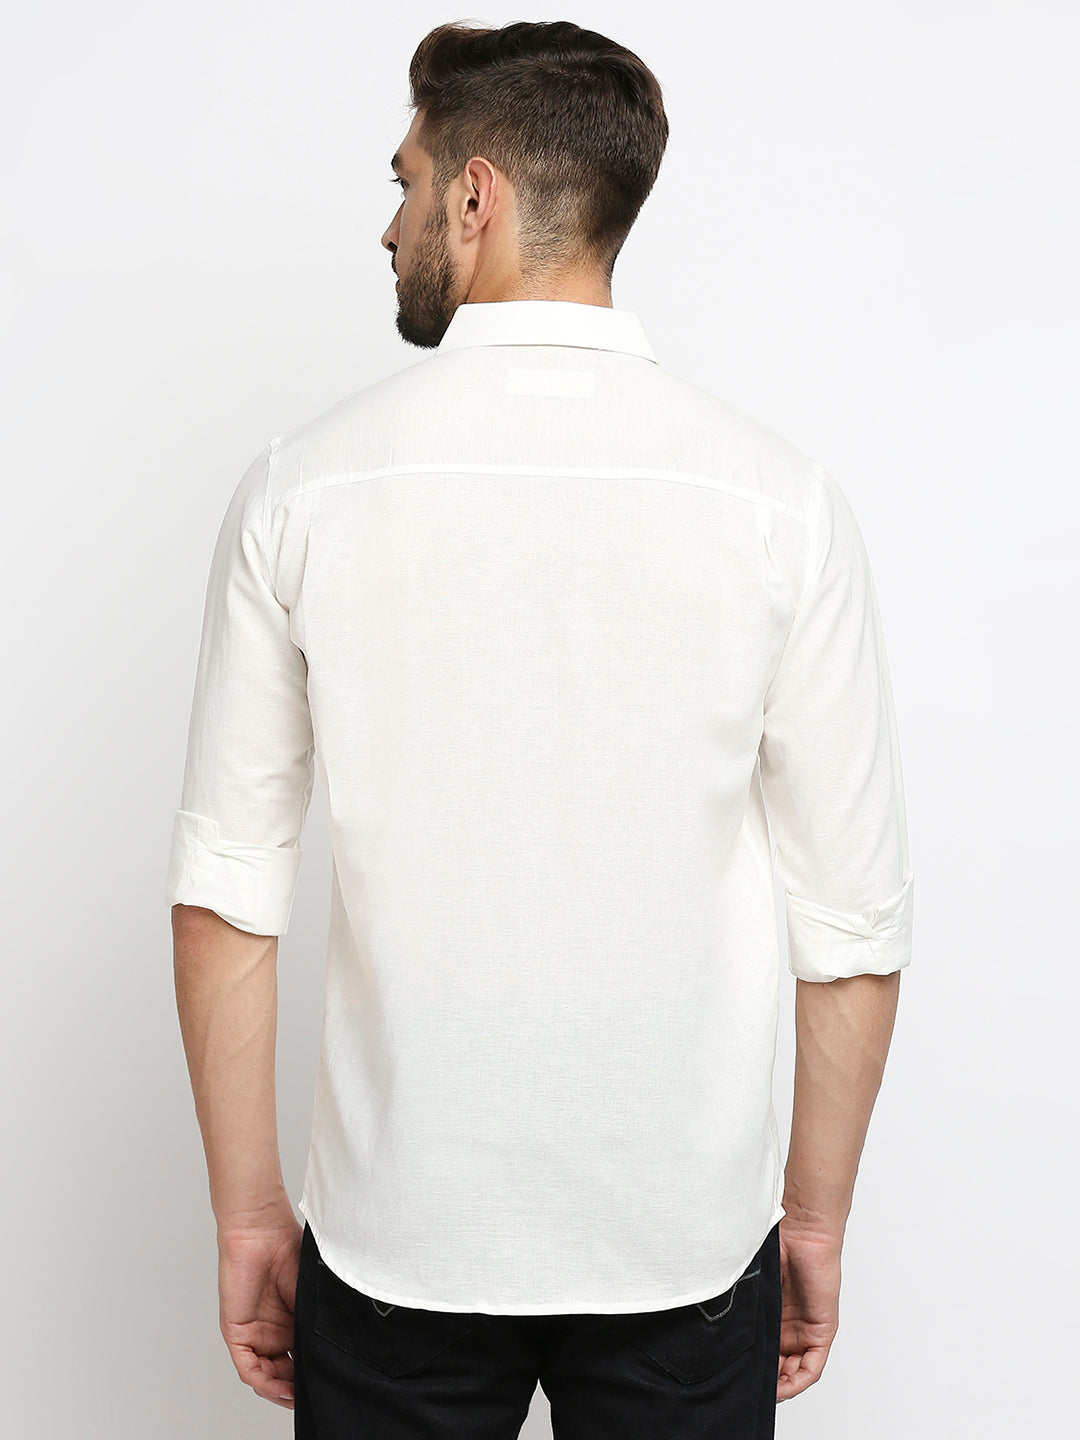 Indulge Pure Linen White Shirt